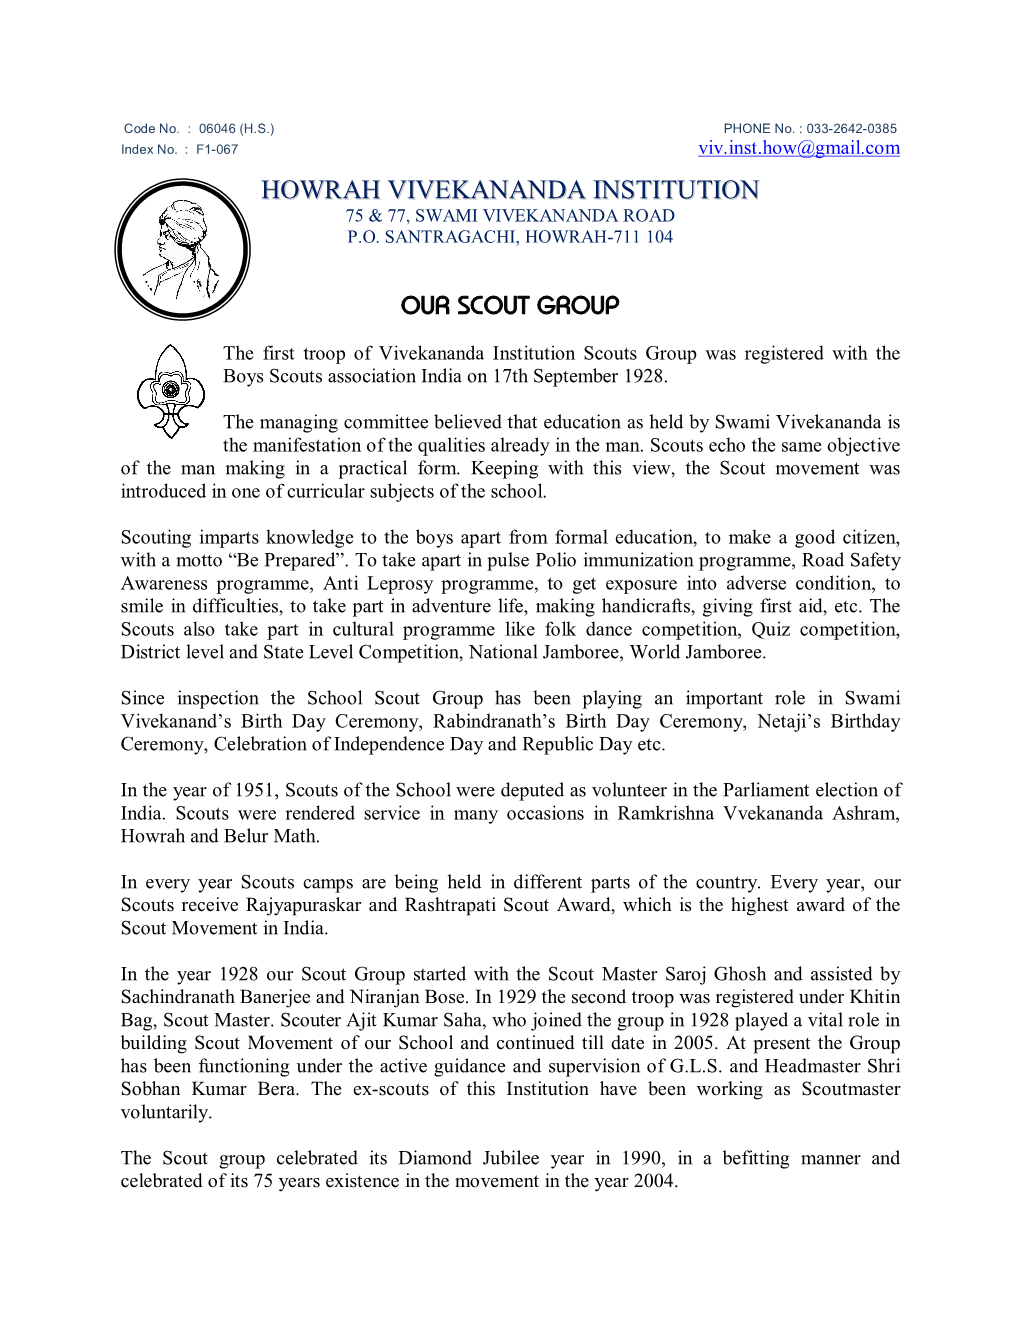 Howrah Vivekananda Institution 75 & 77, Swami Vivekananda Road P.O